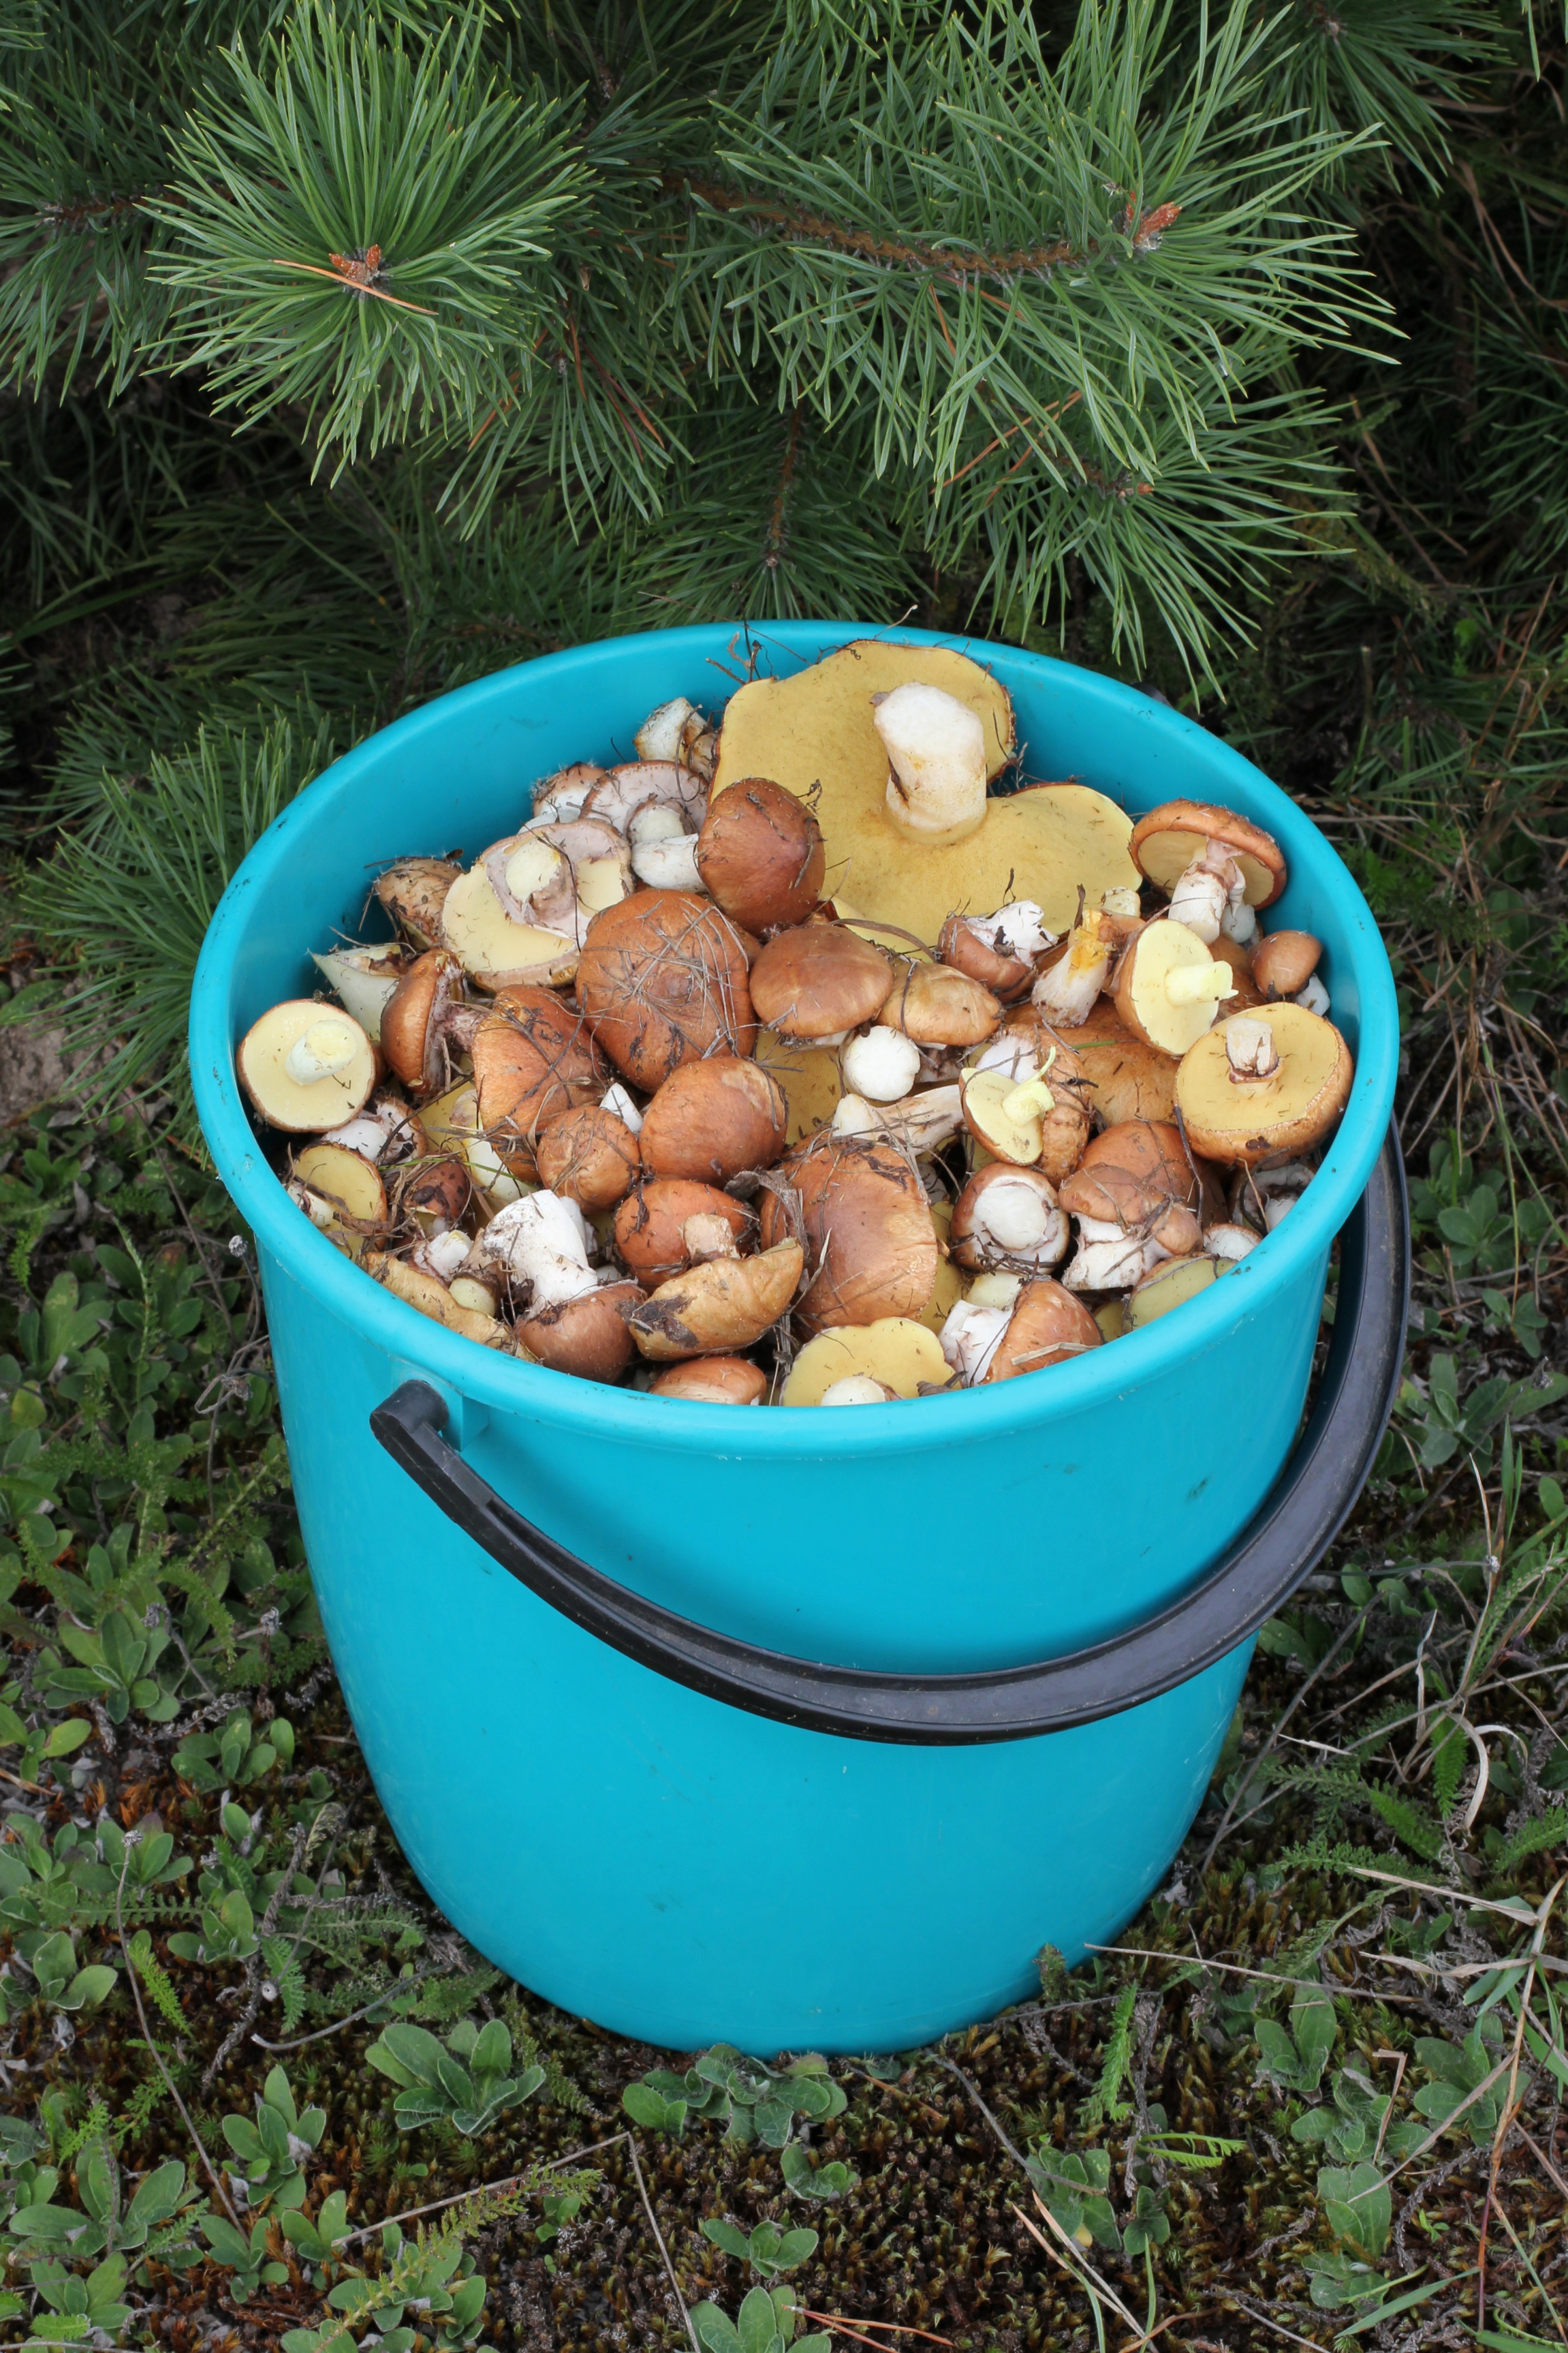 Edible fungi in bucket 2013 G1